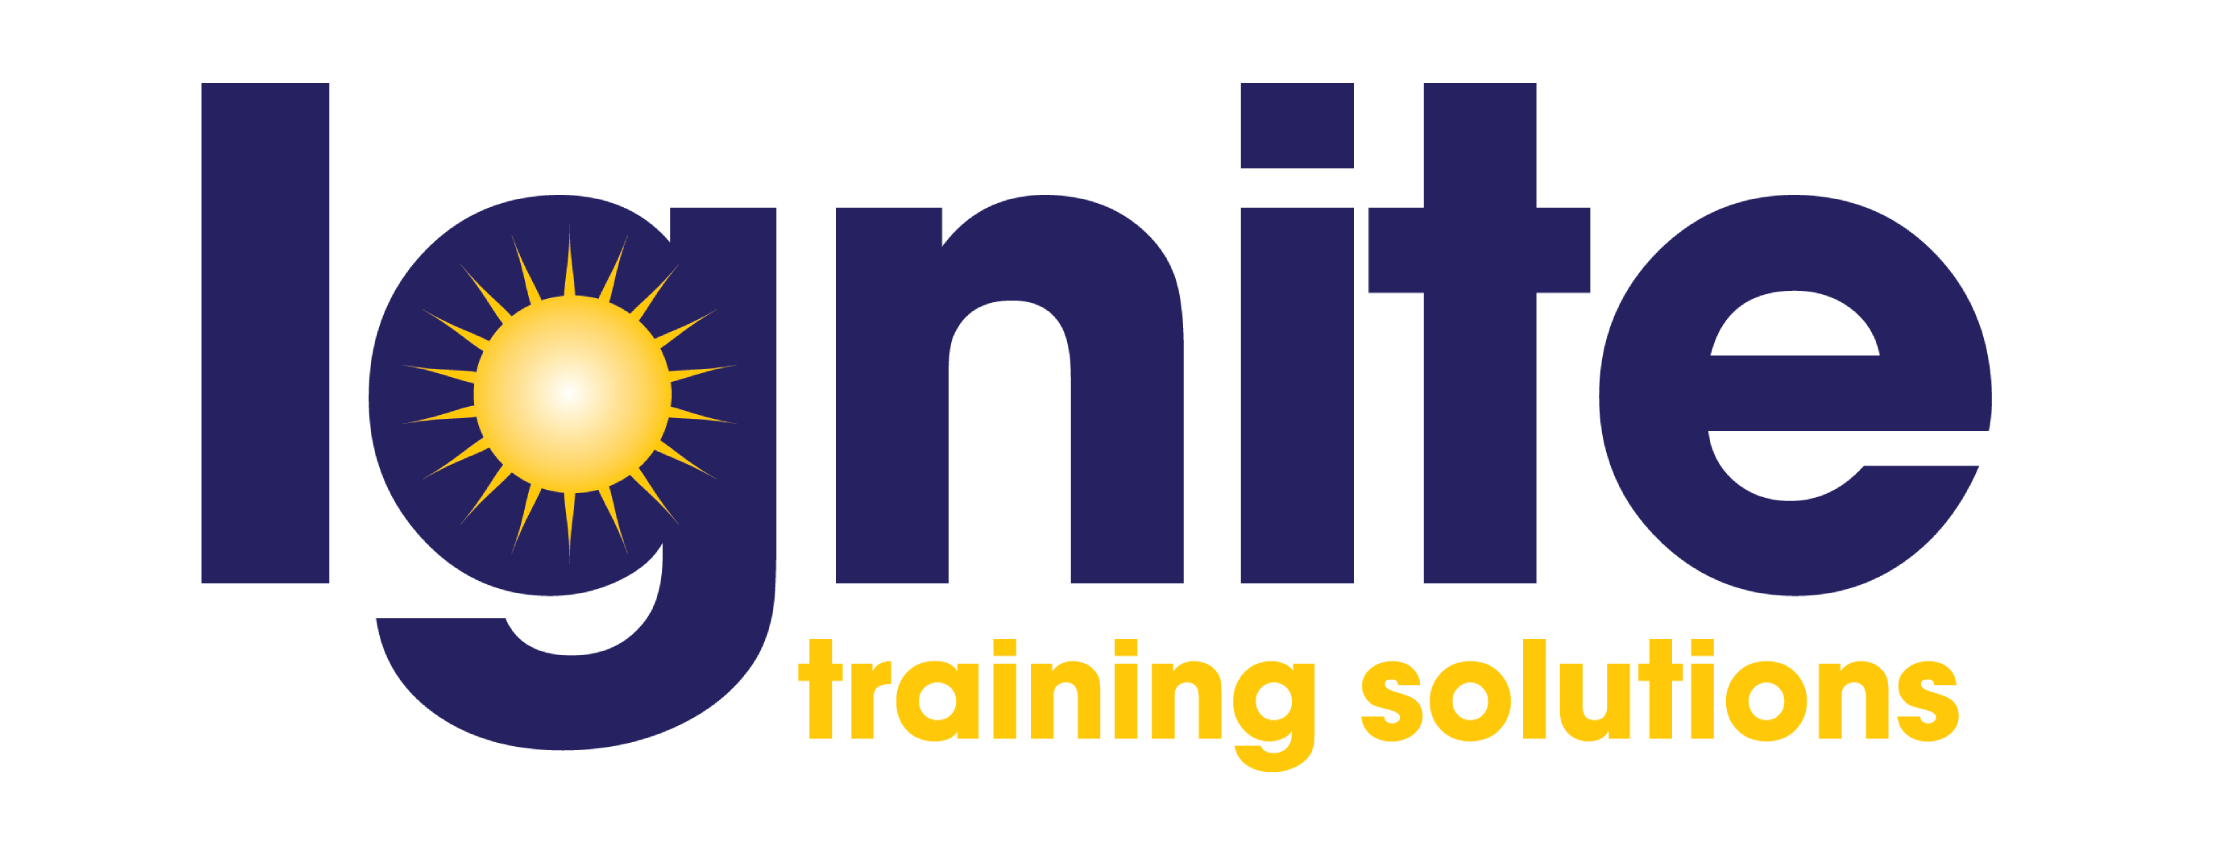 Ignite Training Solutions